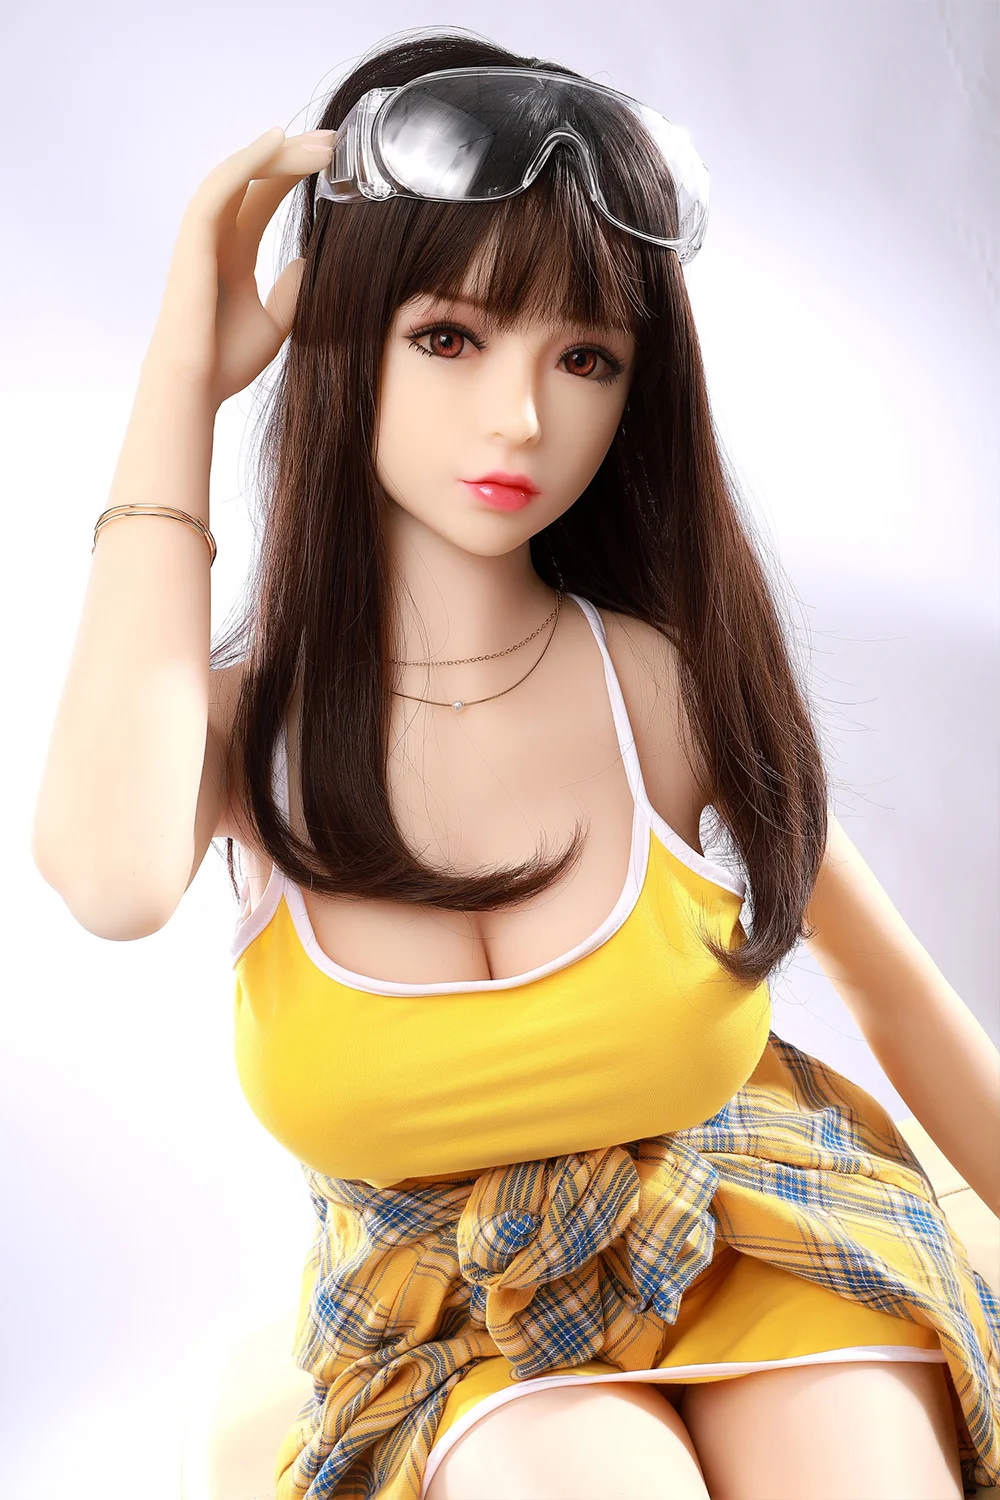 Beautiful sex doll